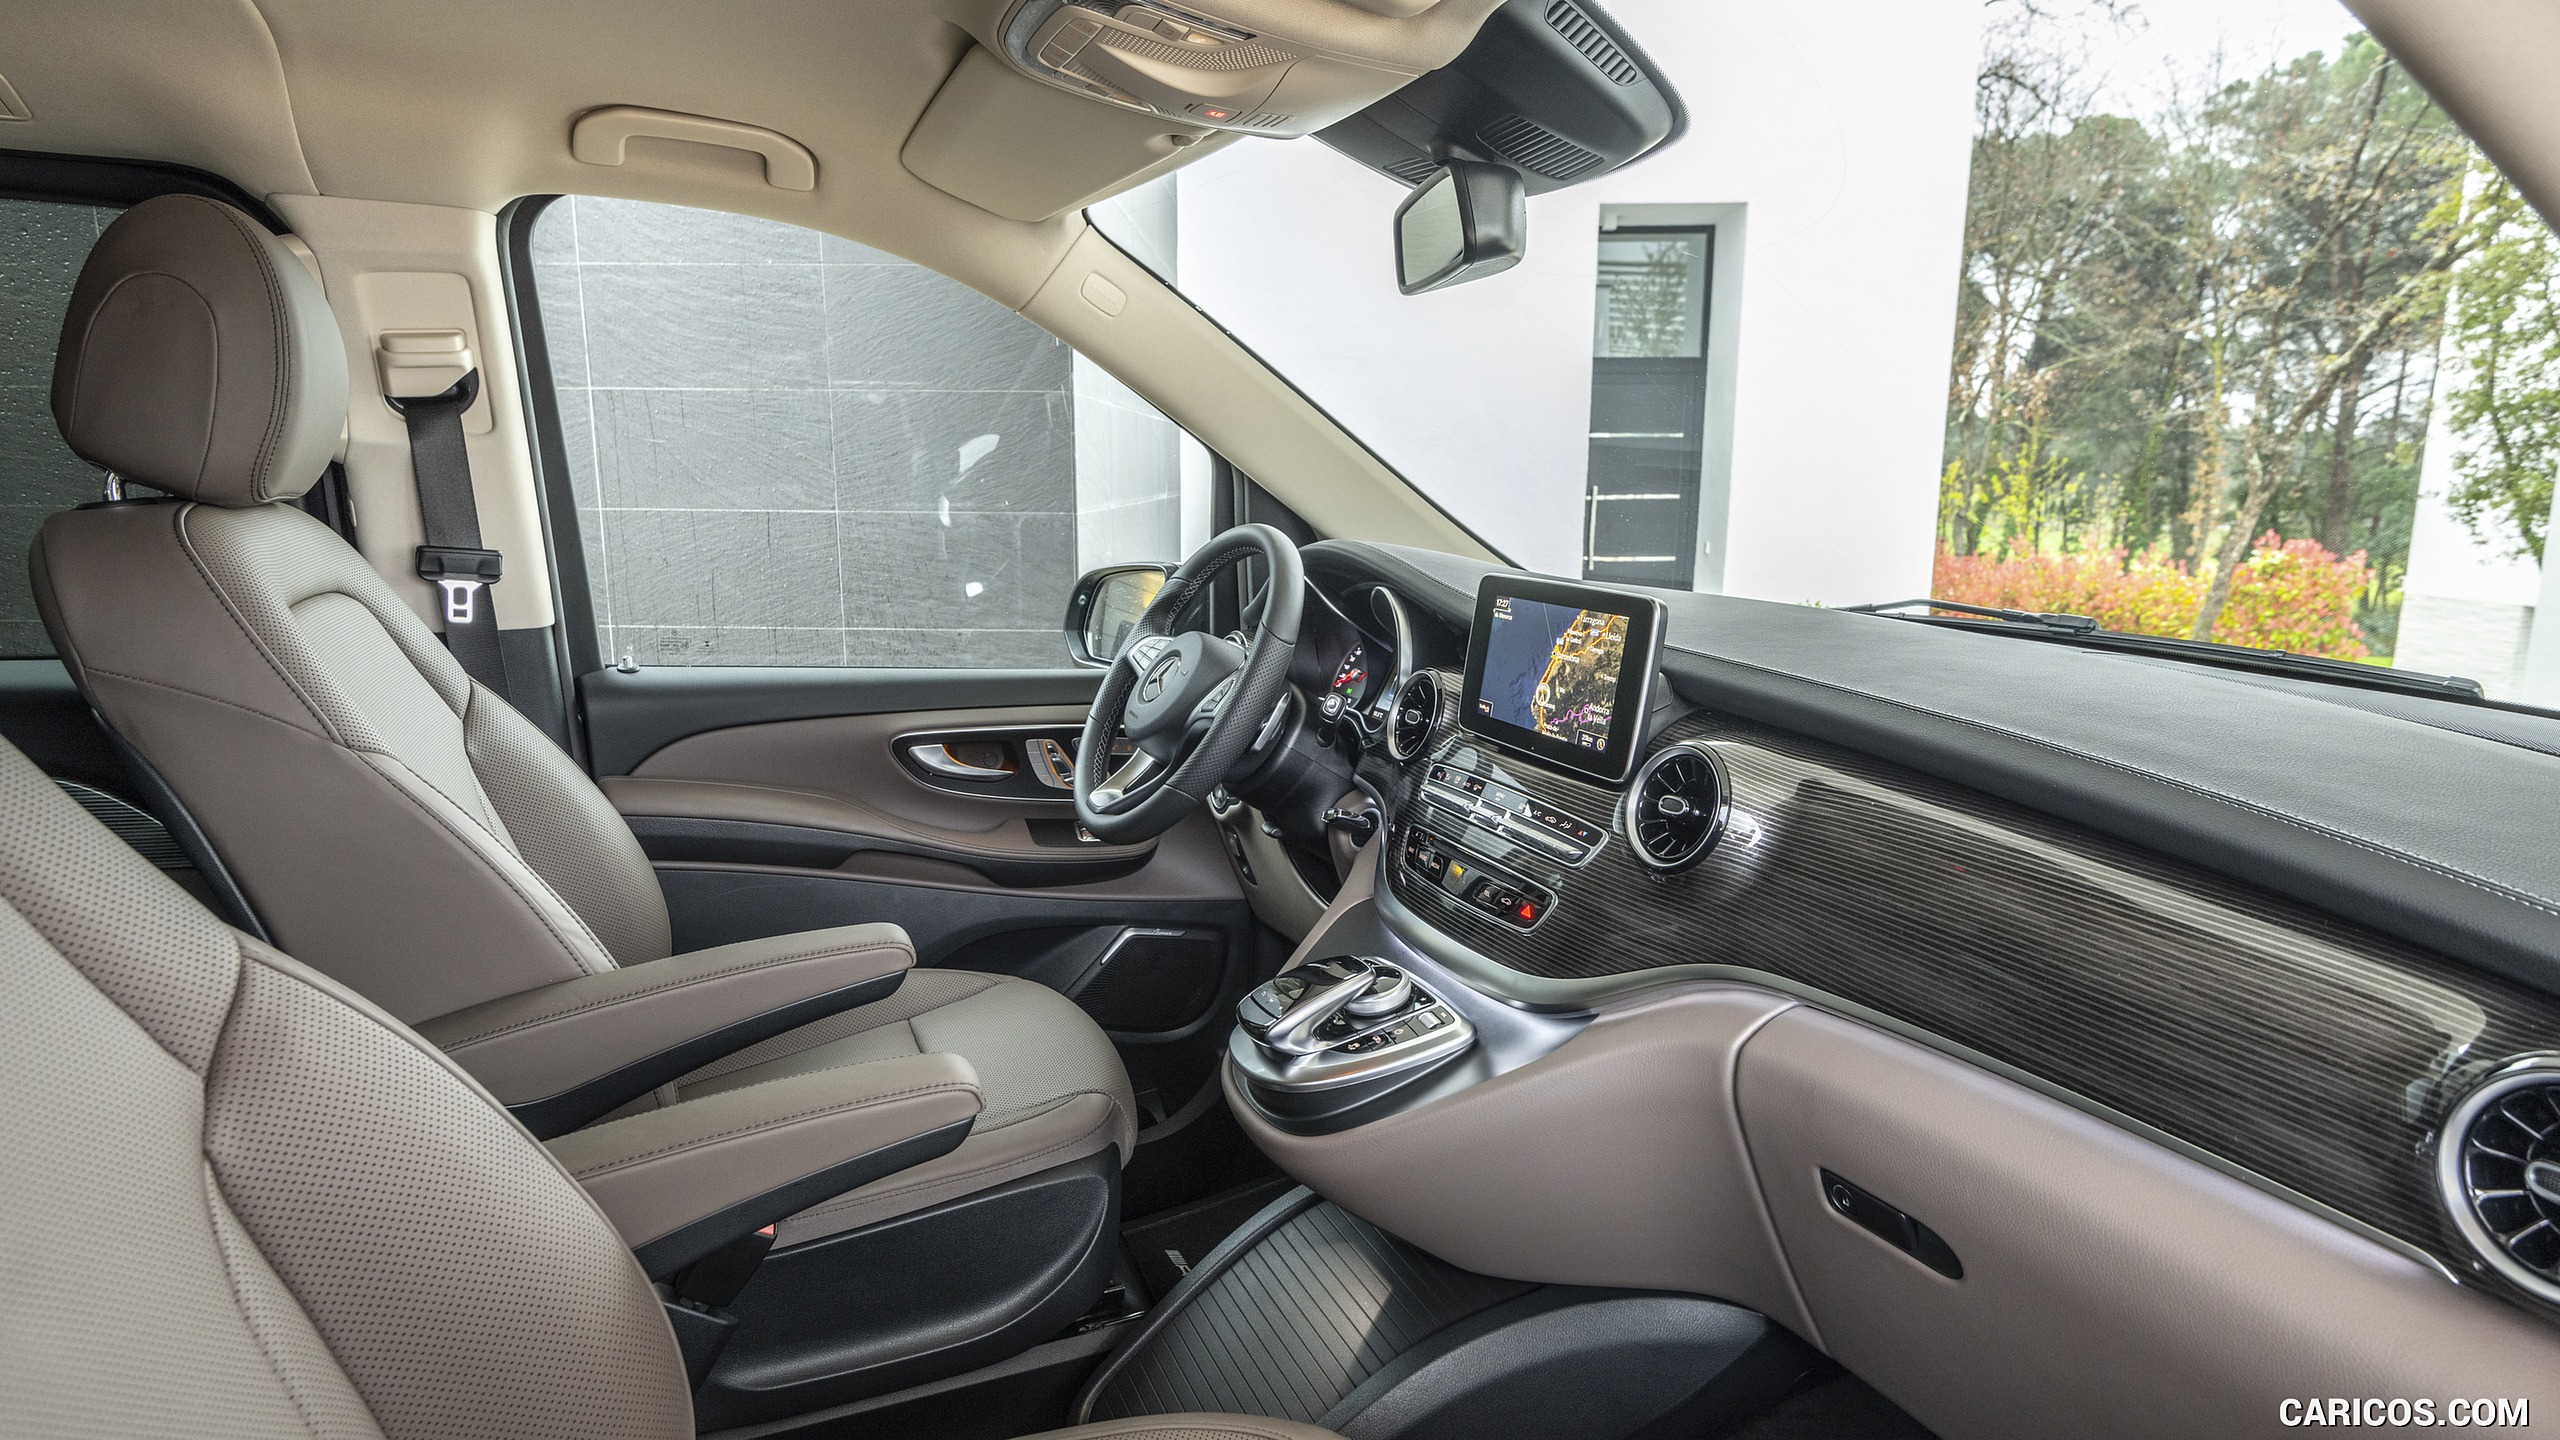 2019 Mercedes-Benz V-Class V300d - Interior, Front Seats, #143 of 216